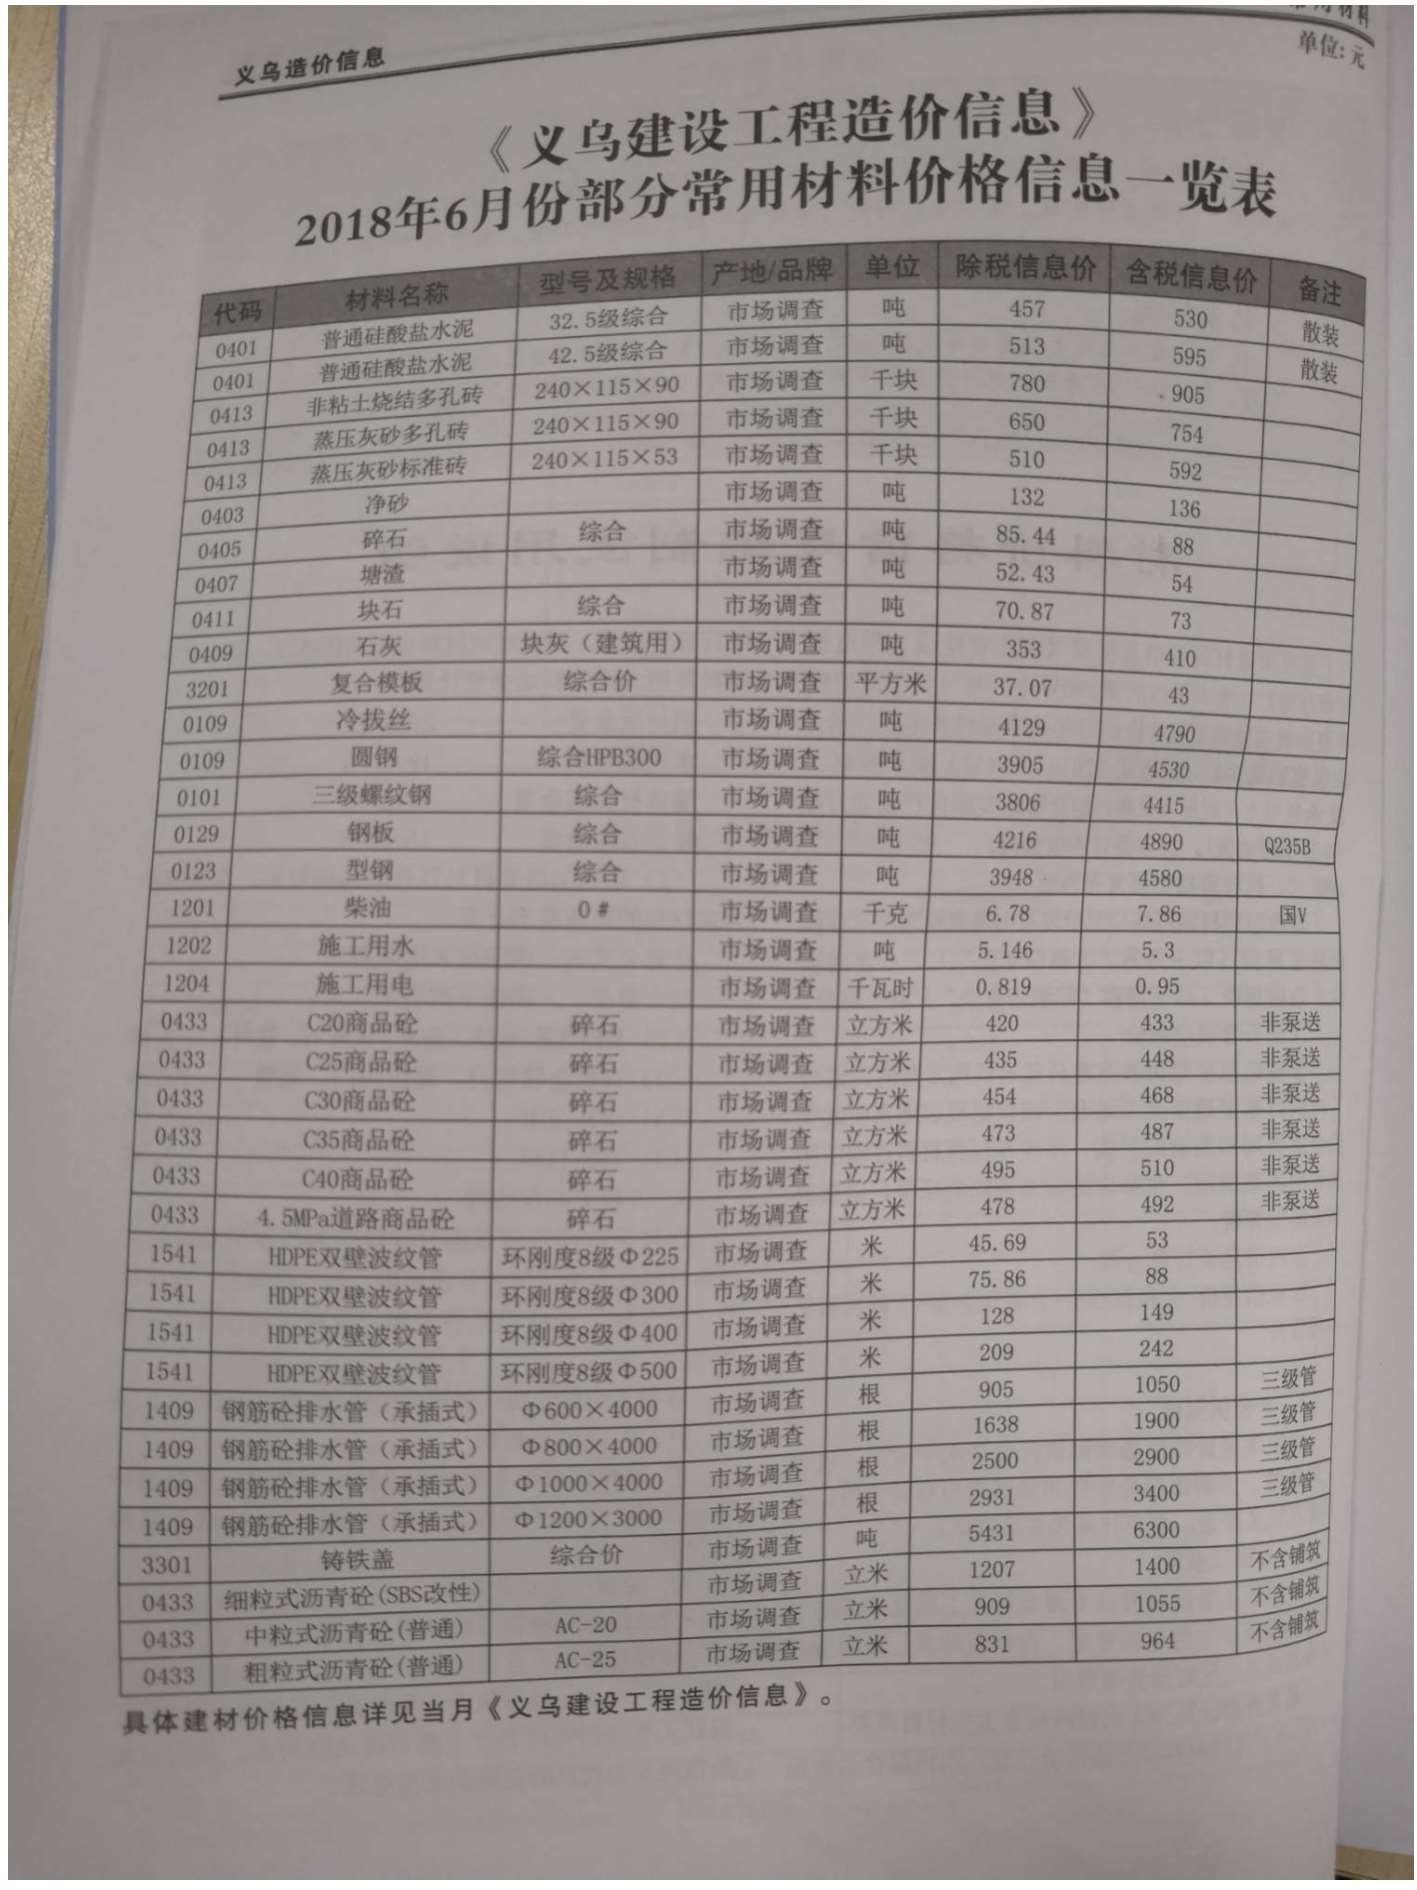 义乌市2018年6月信息价工程信息价_义乌市信息价期刊PDF扫描件电子版